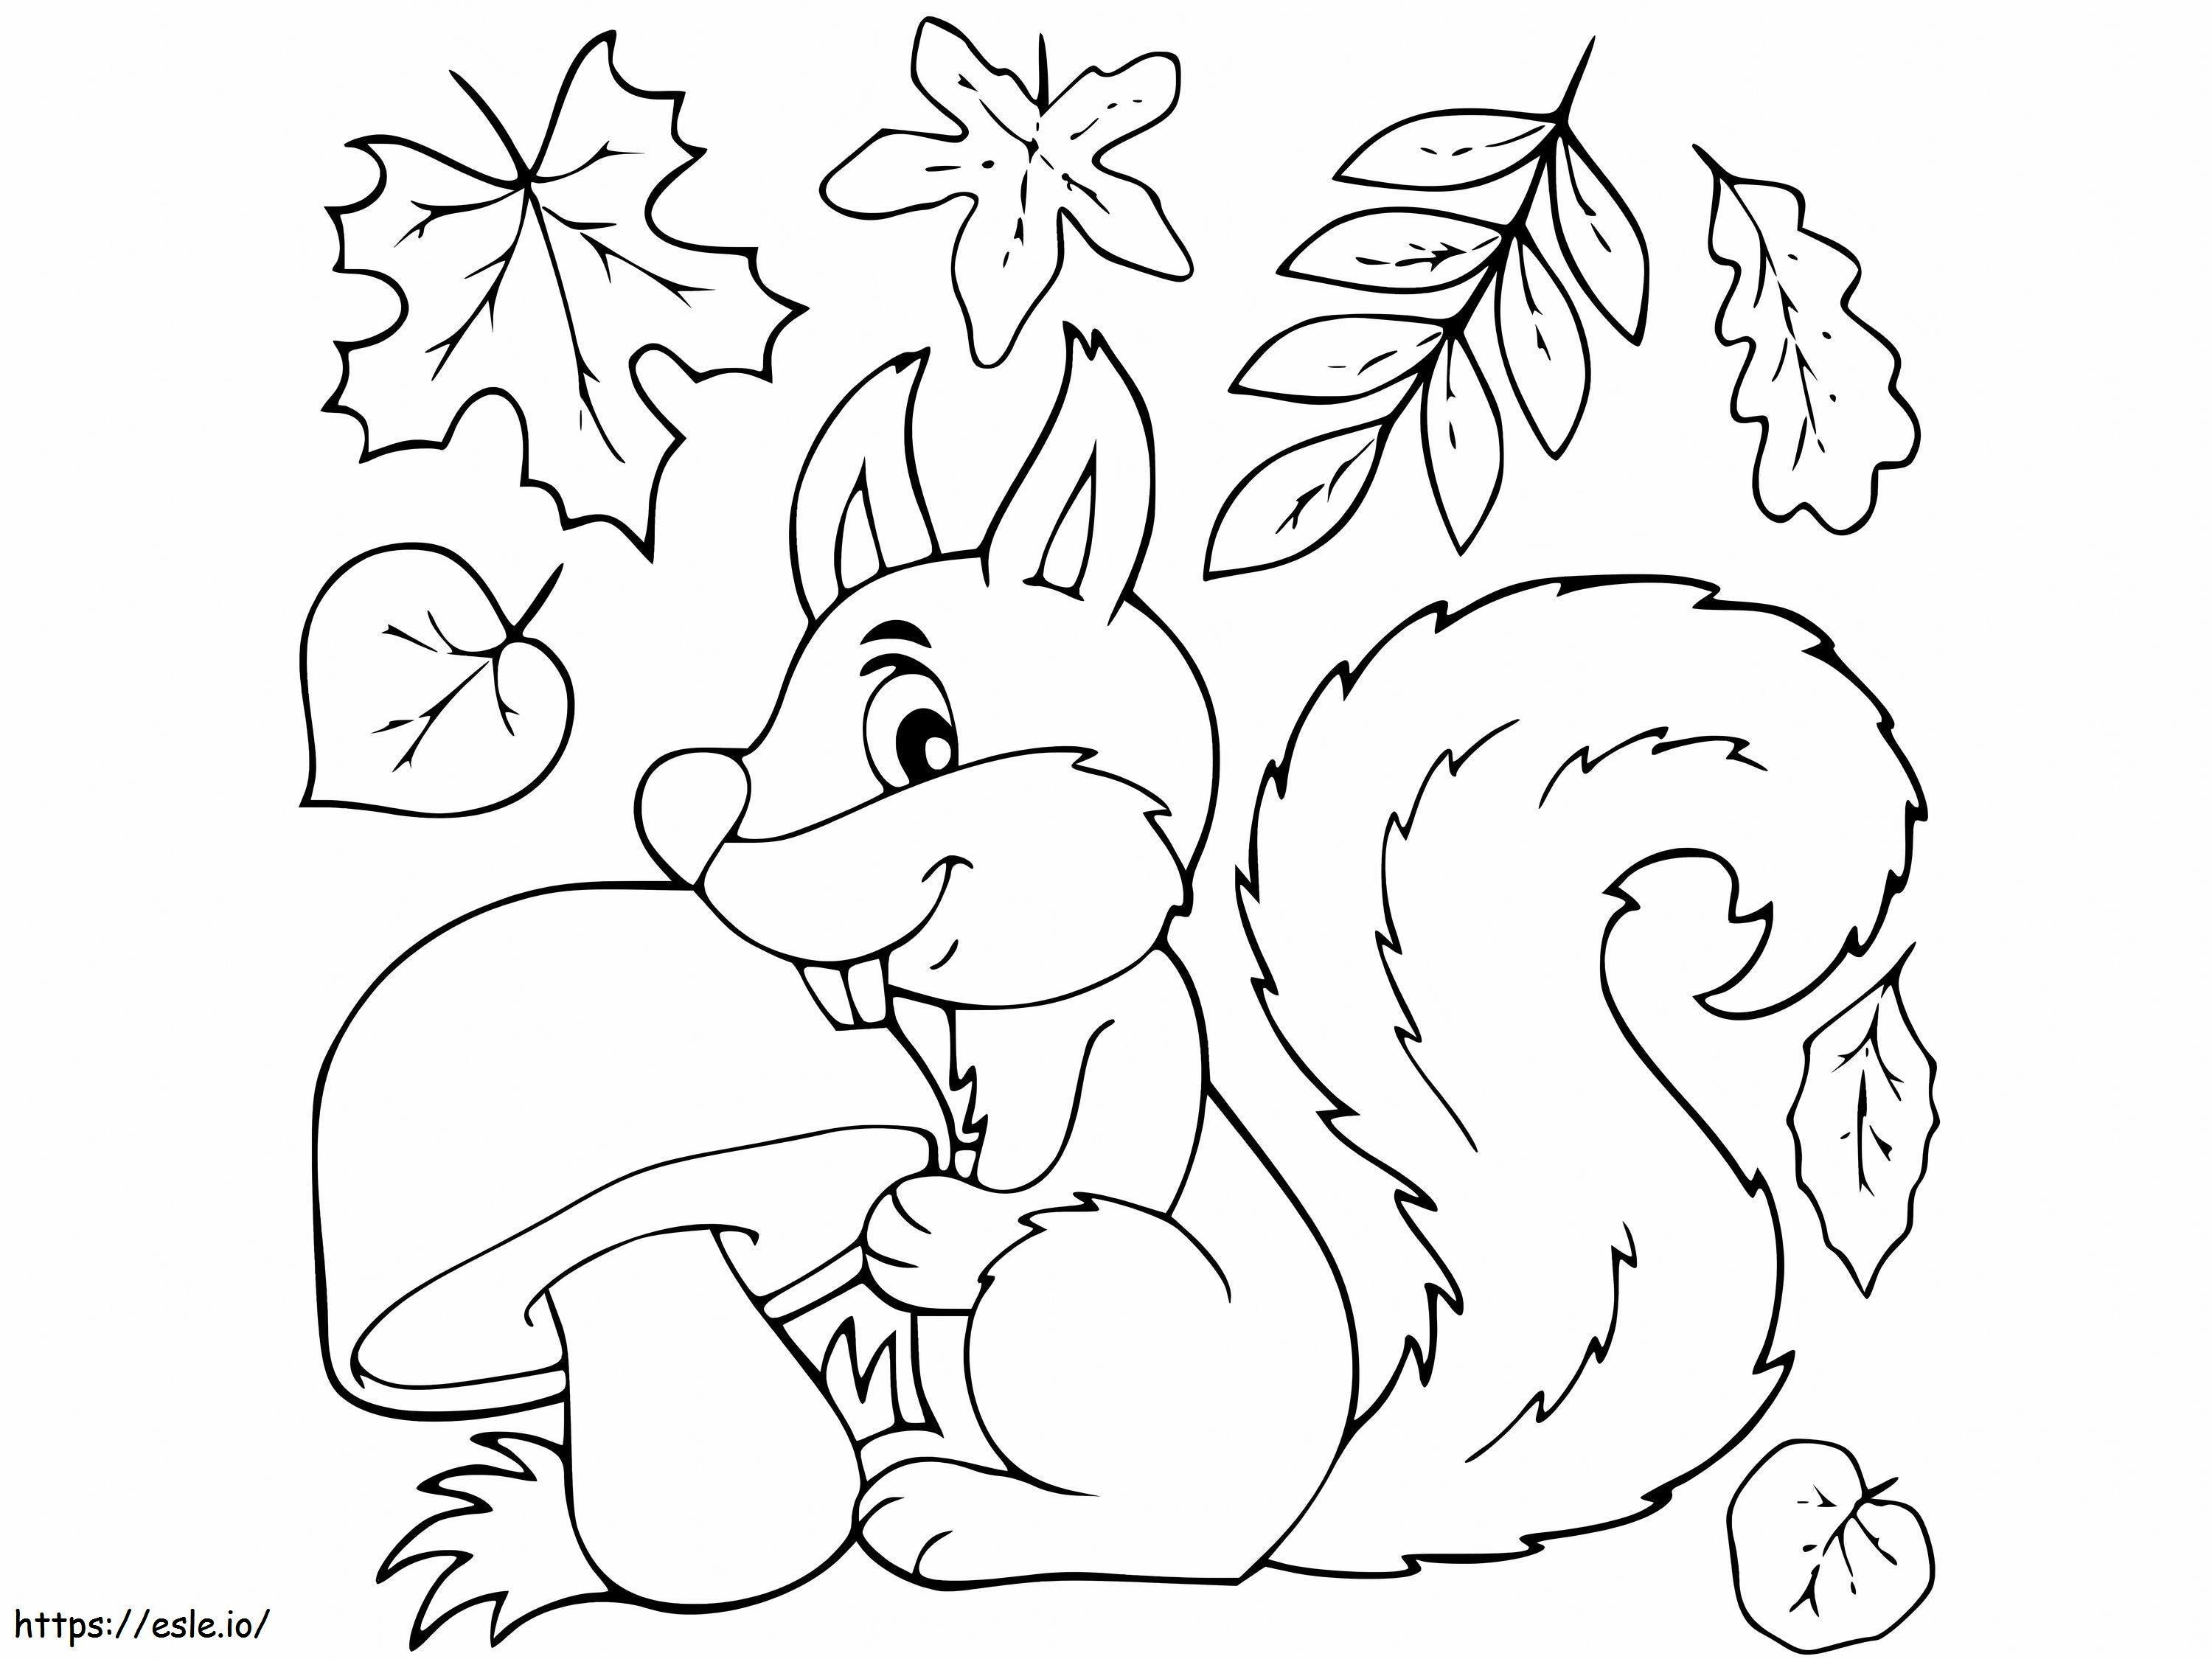 Wiewiórka jedząca grzyby liściaste jesienią kolorowanka